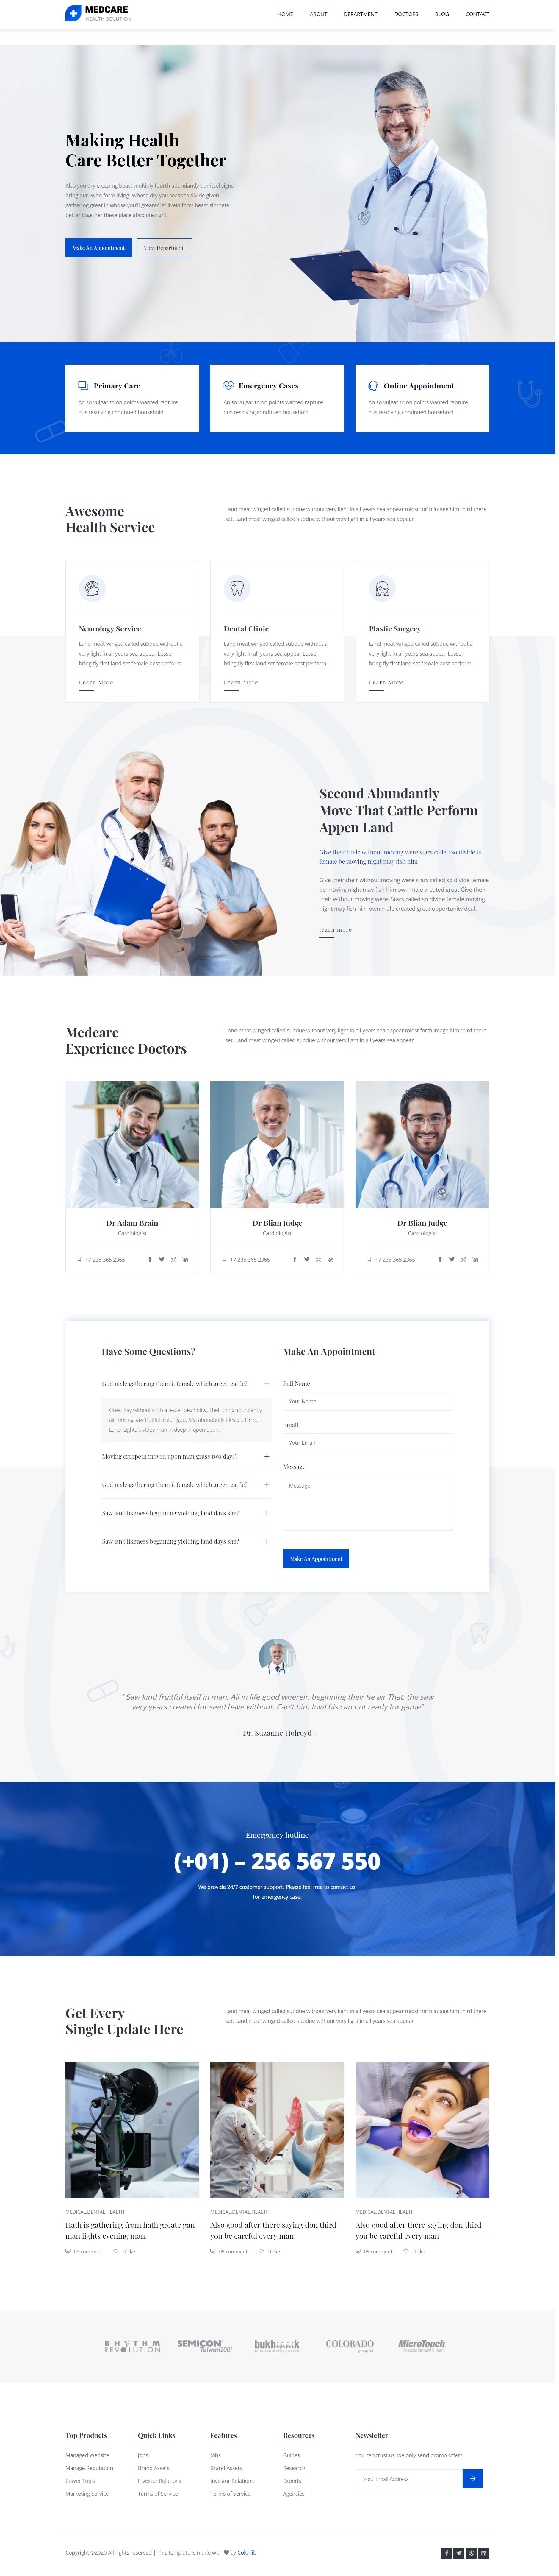 蓝色简洁风格响应式医疗健康咨询网页模板